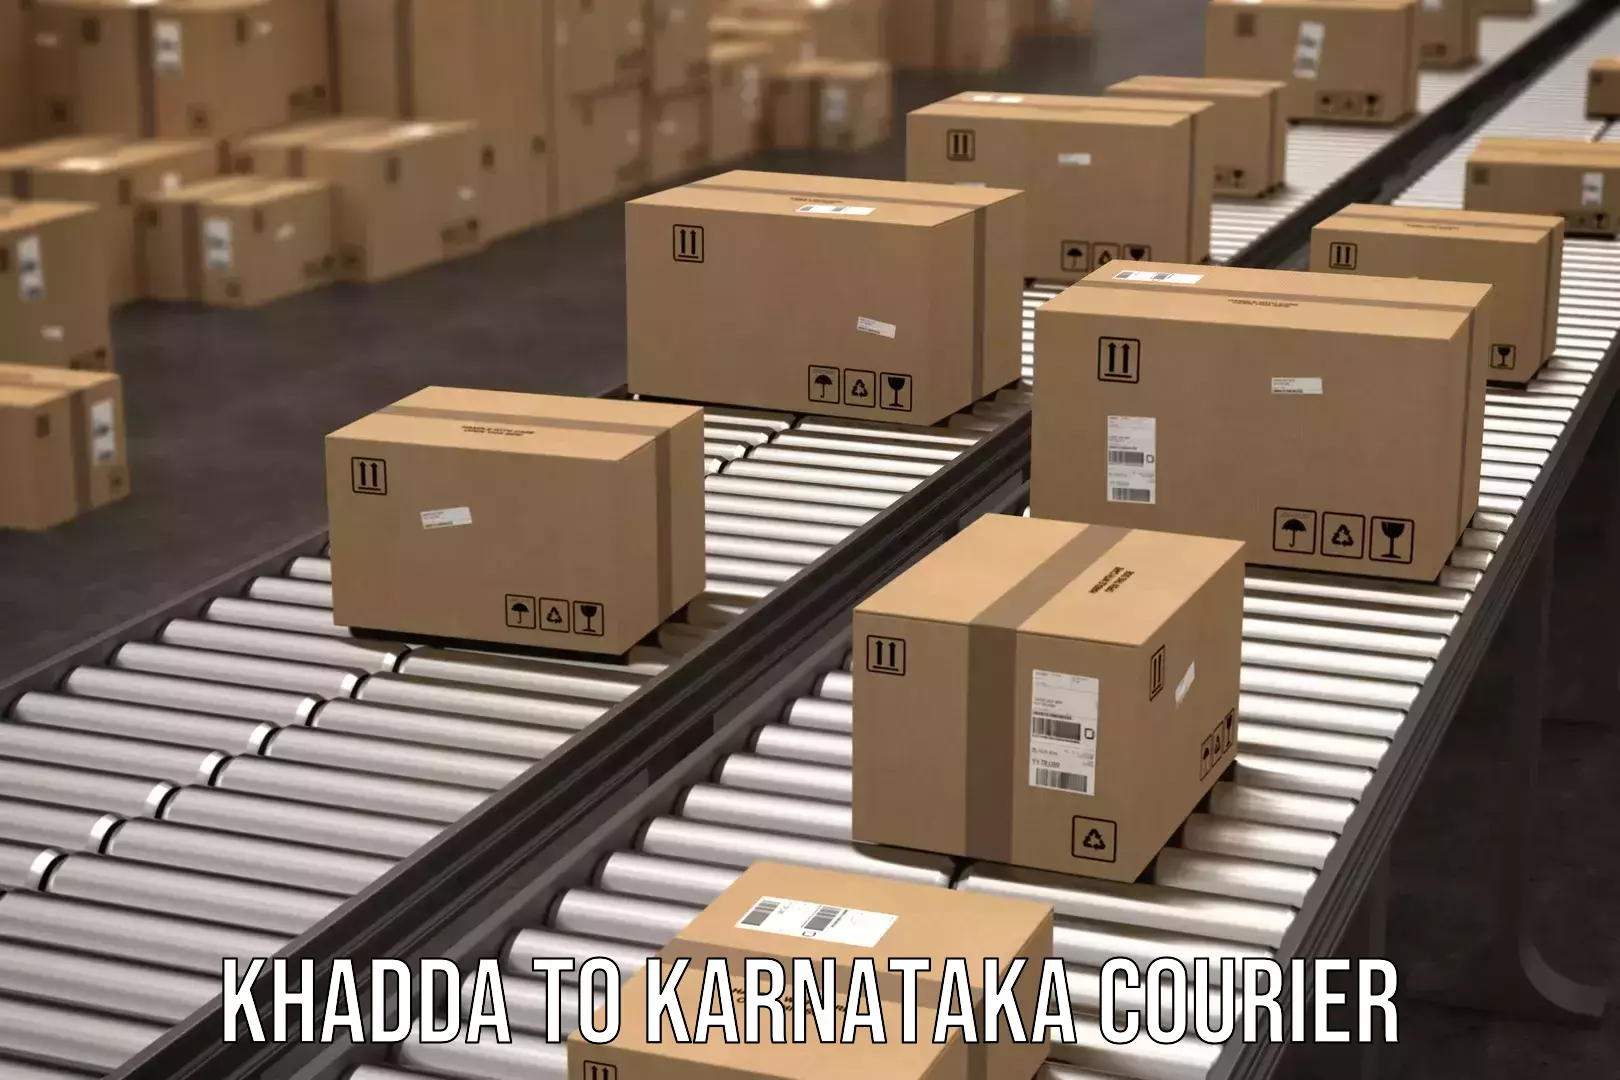 Door-to-door shipping Khadda to Karnataka